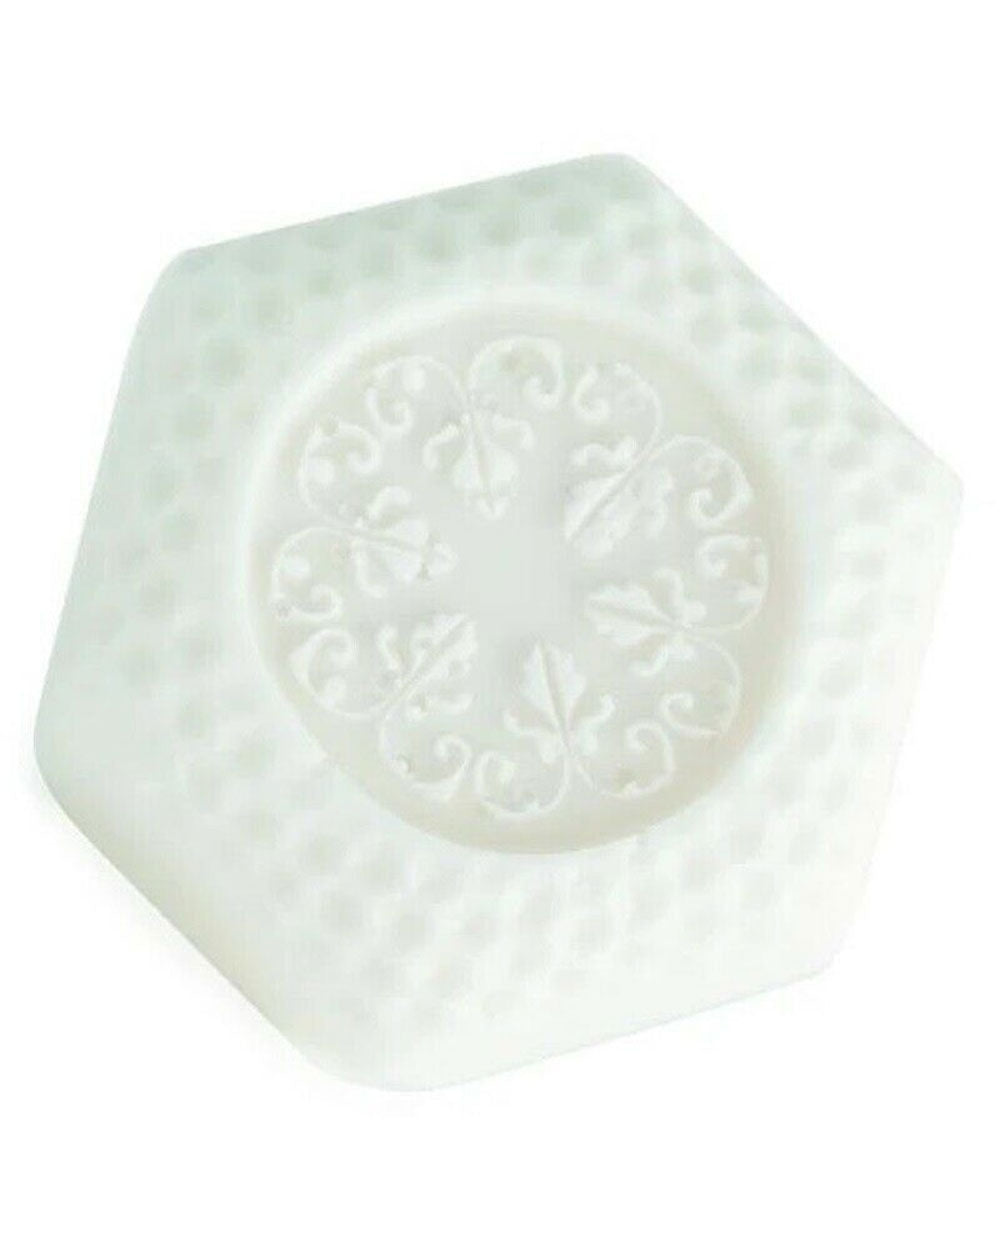 Cream Soap Single